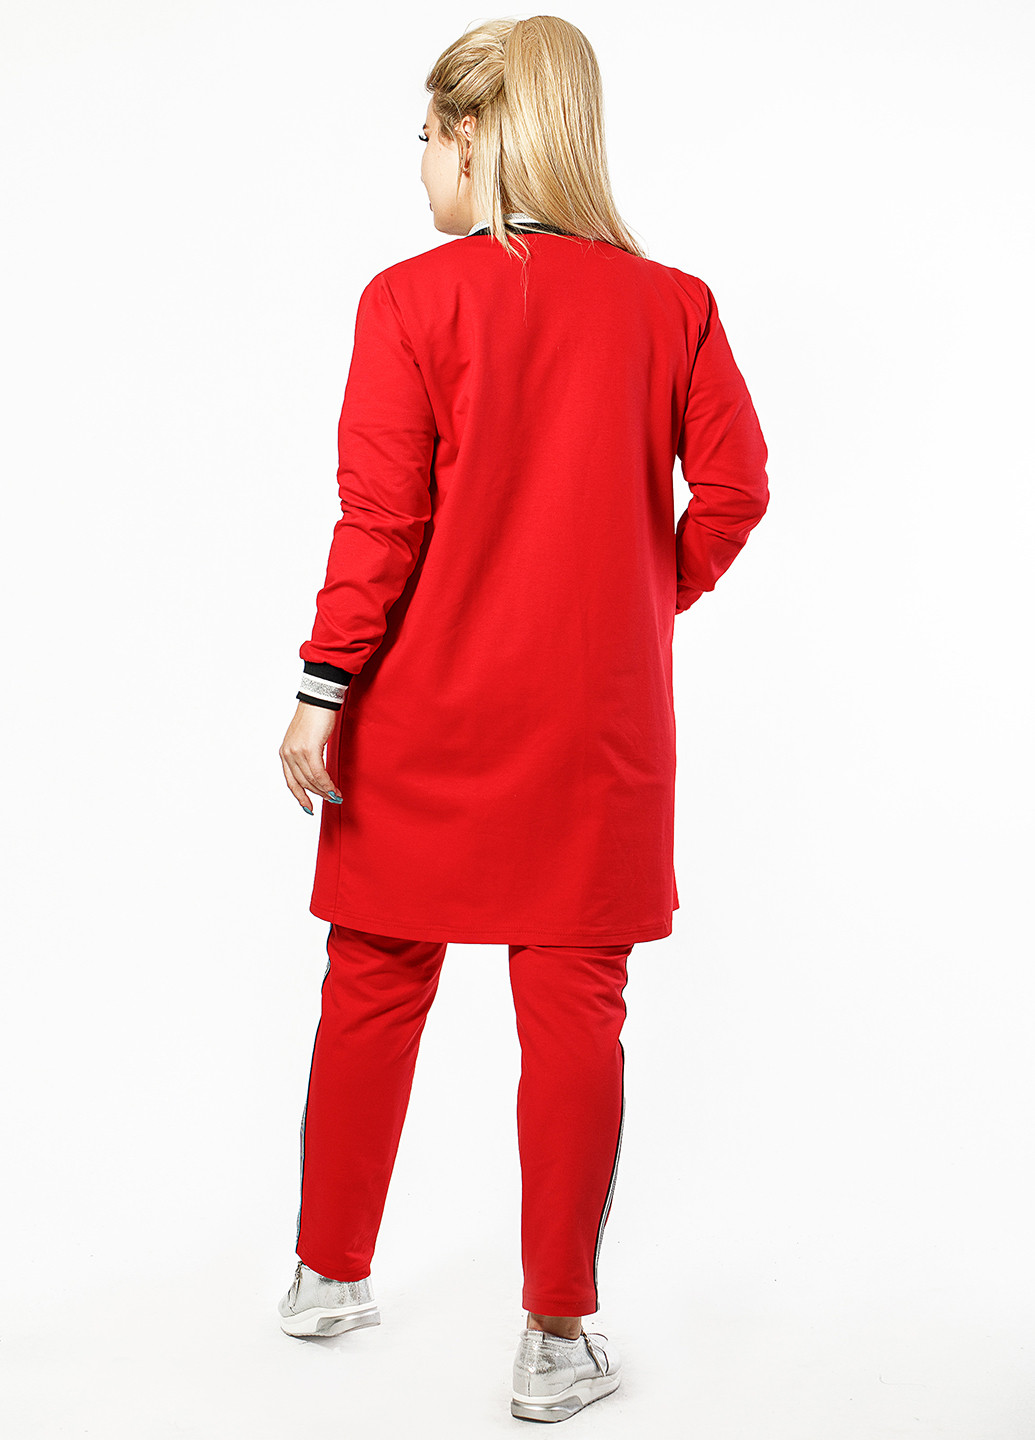 Костюм (кофта, брюки) Primyana брючный однотонный красный кэжуал